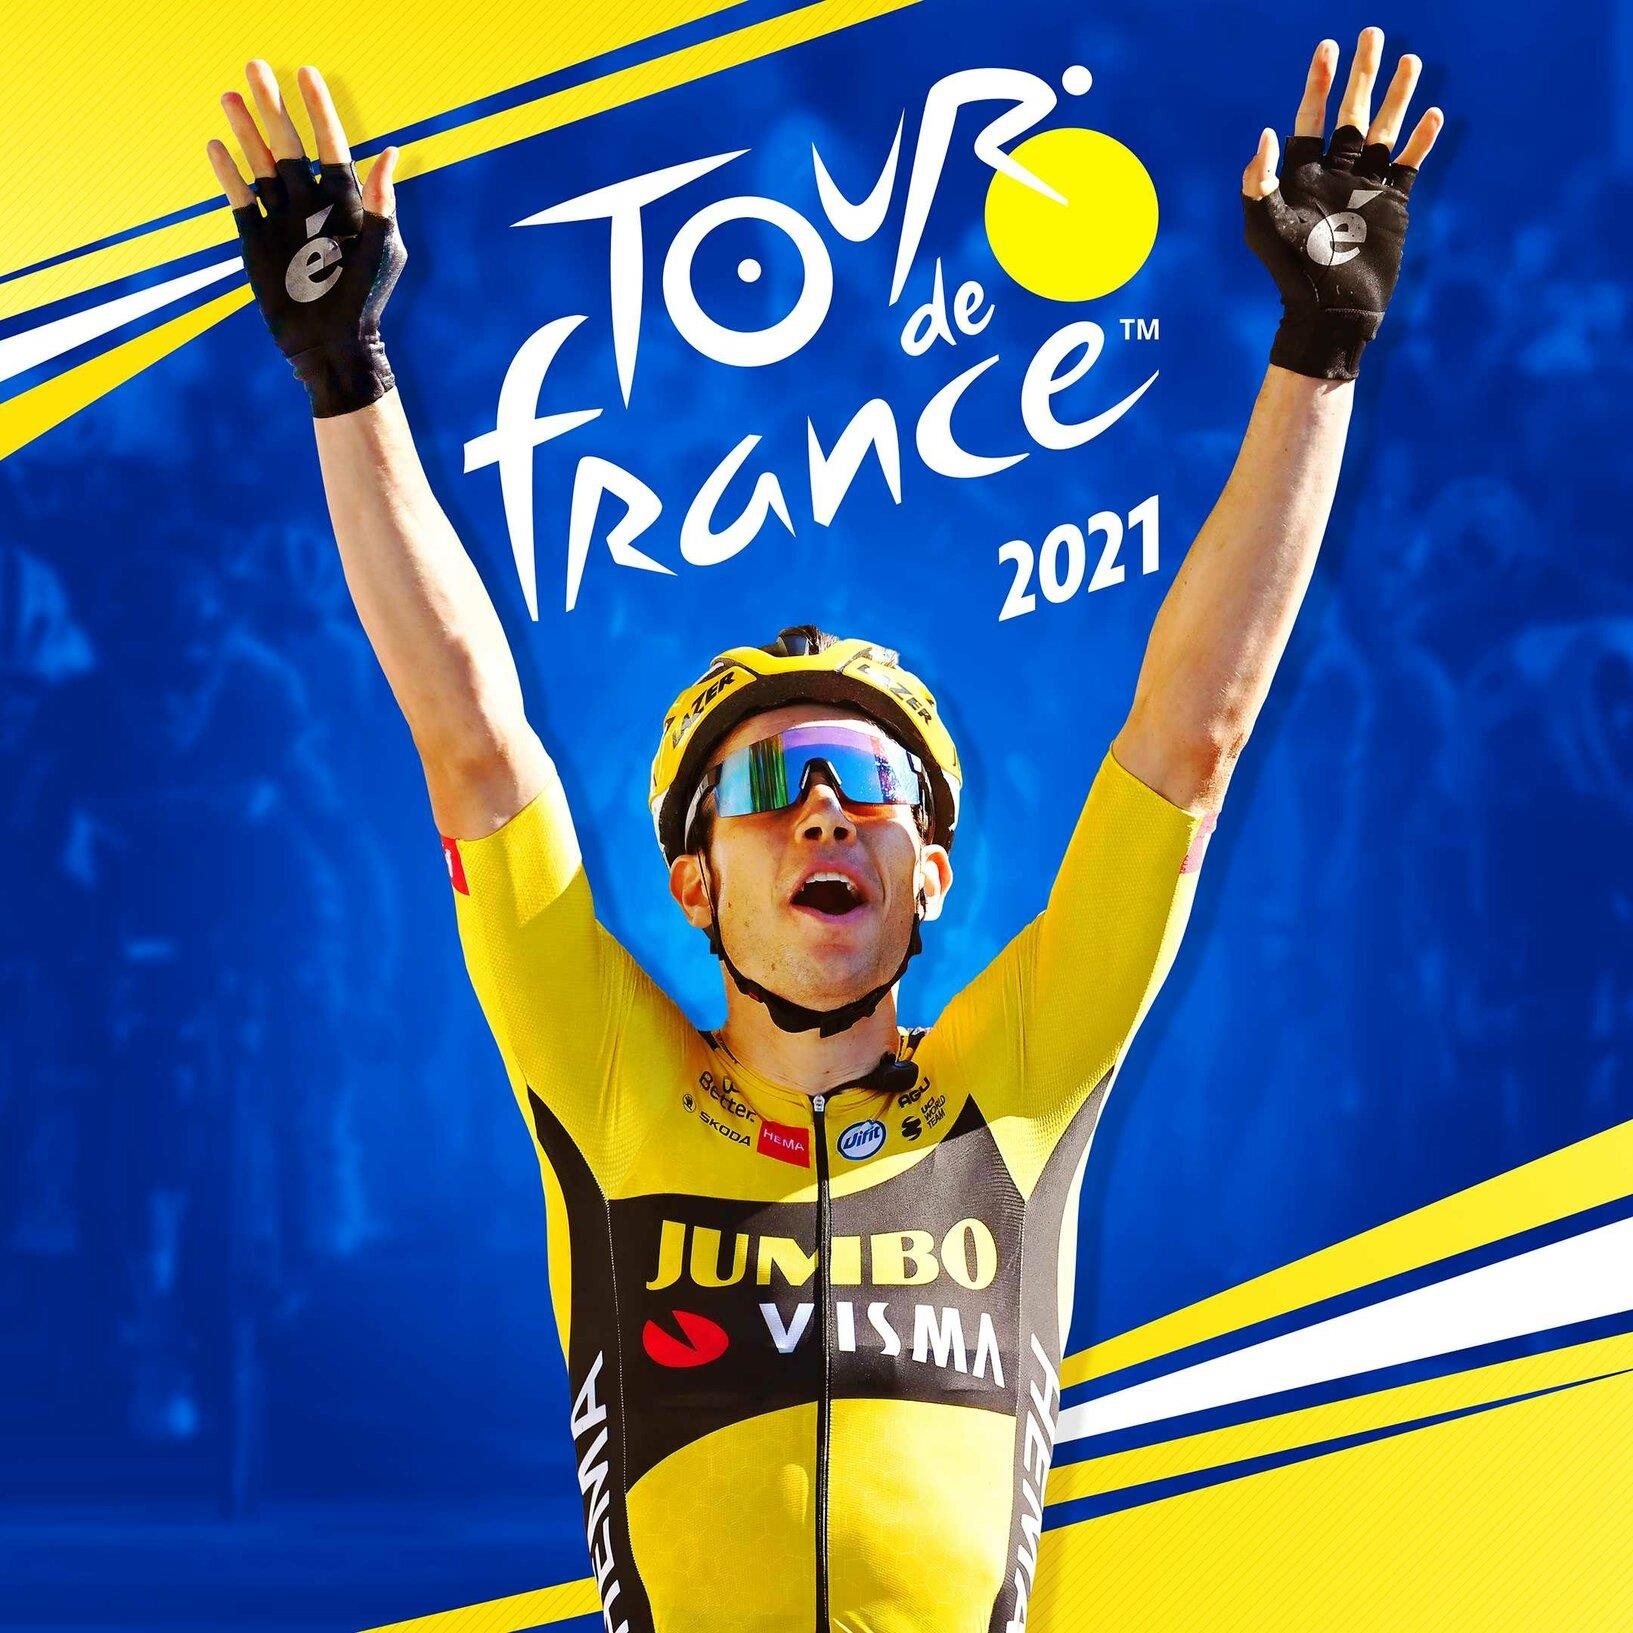 Tour de France 2021 - PC DIGITAL